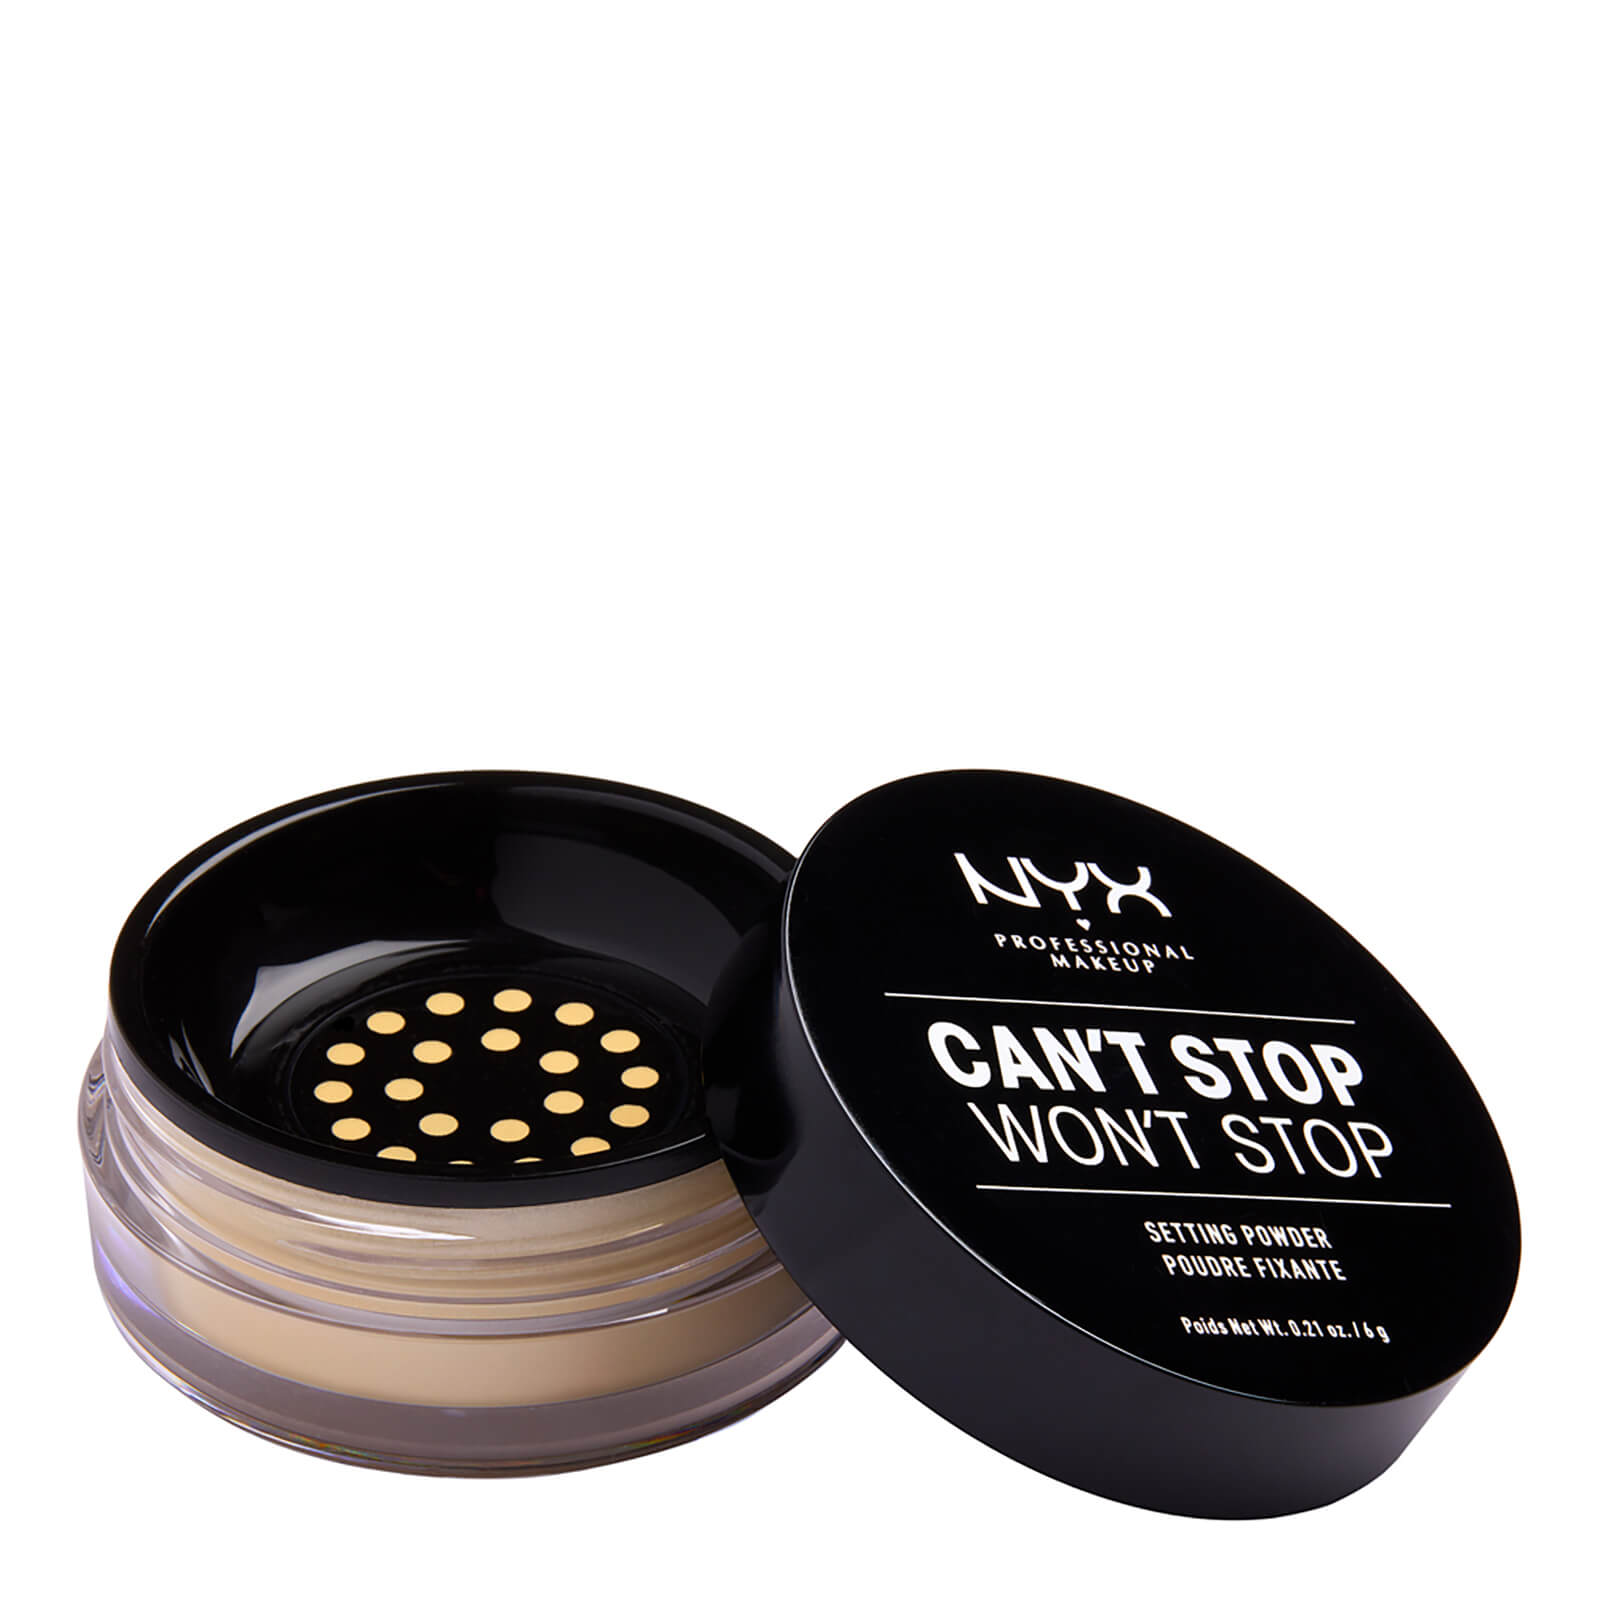 NYX Professional Makeup Can't Stop Won't Stop Setting Powder (Various Shades) - Banana